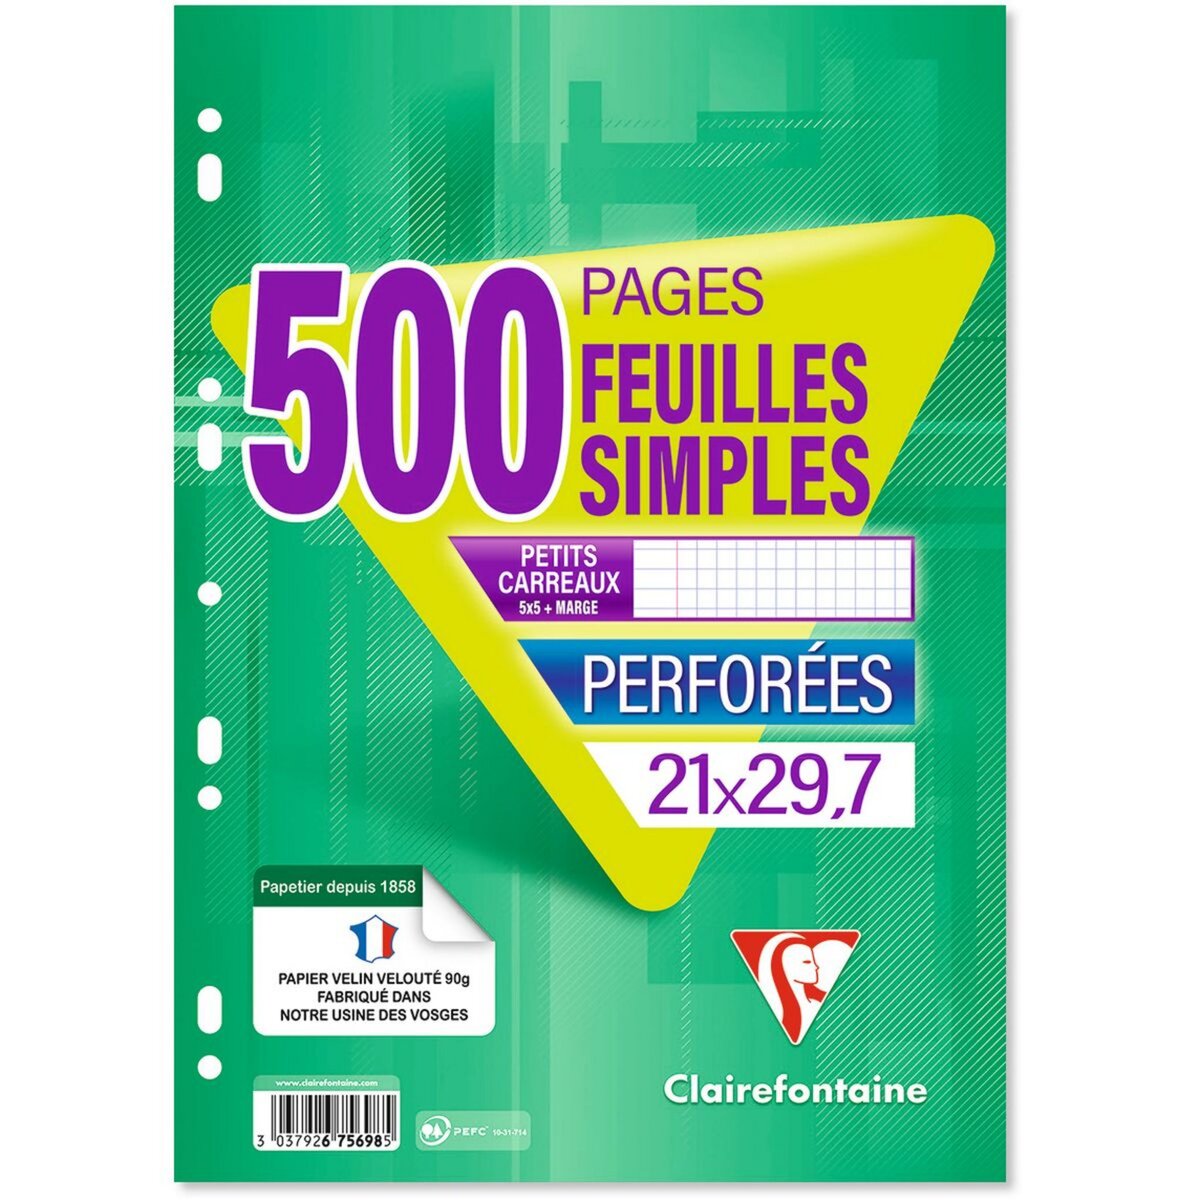 CLAIREFONTAINE Feuilles simples 500 pages 21x29.7 petits carreaux 5x5 90g blanches perforées